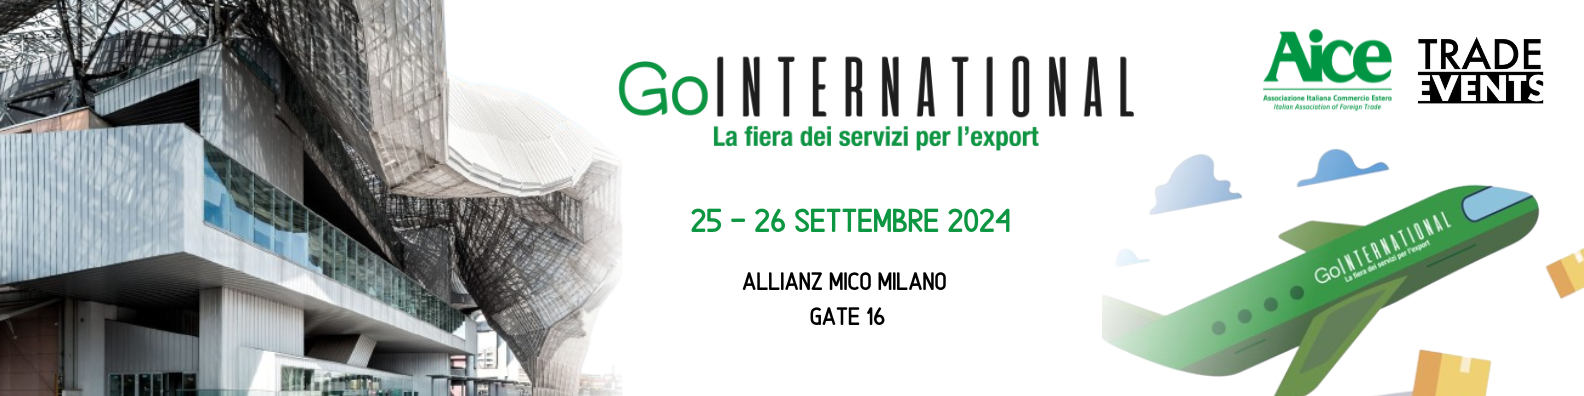 Go International 2024 banner